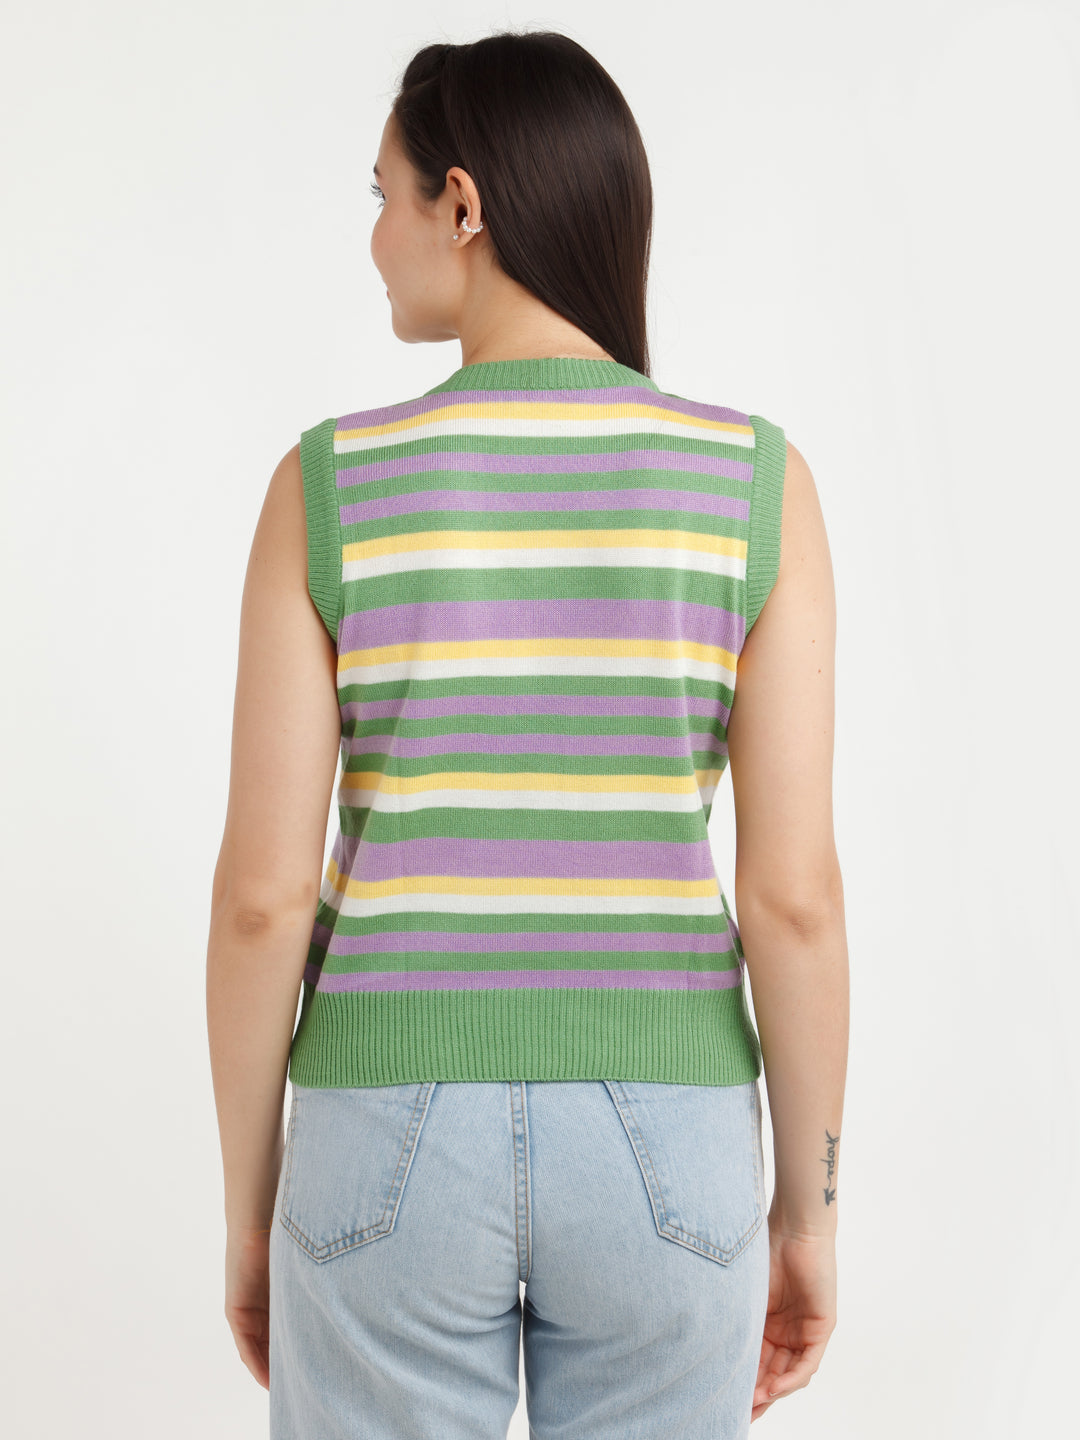 Multi Color Striped Sweater For Women